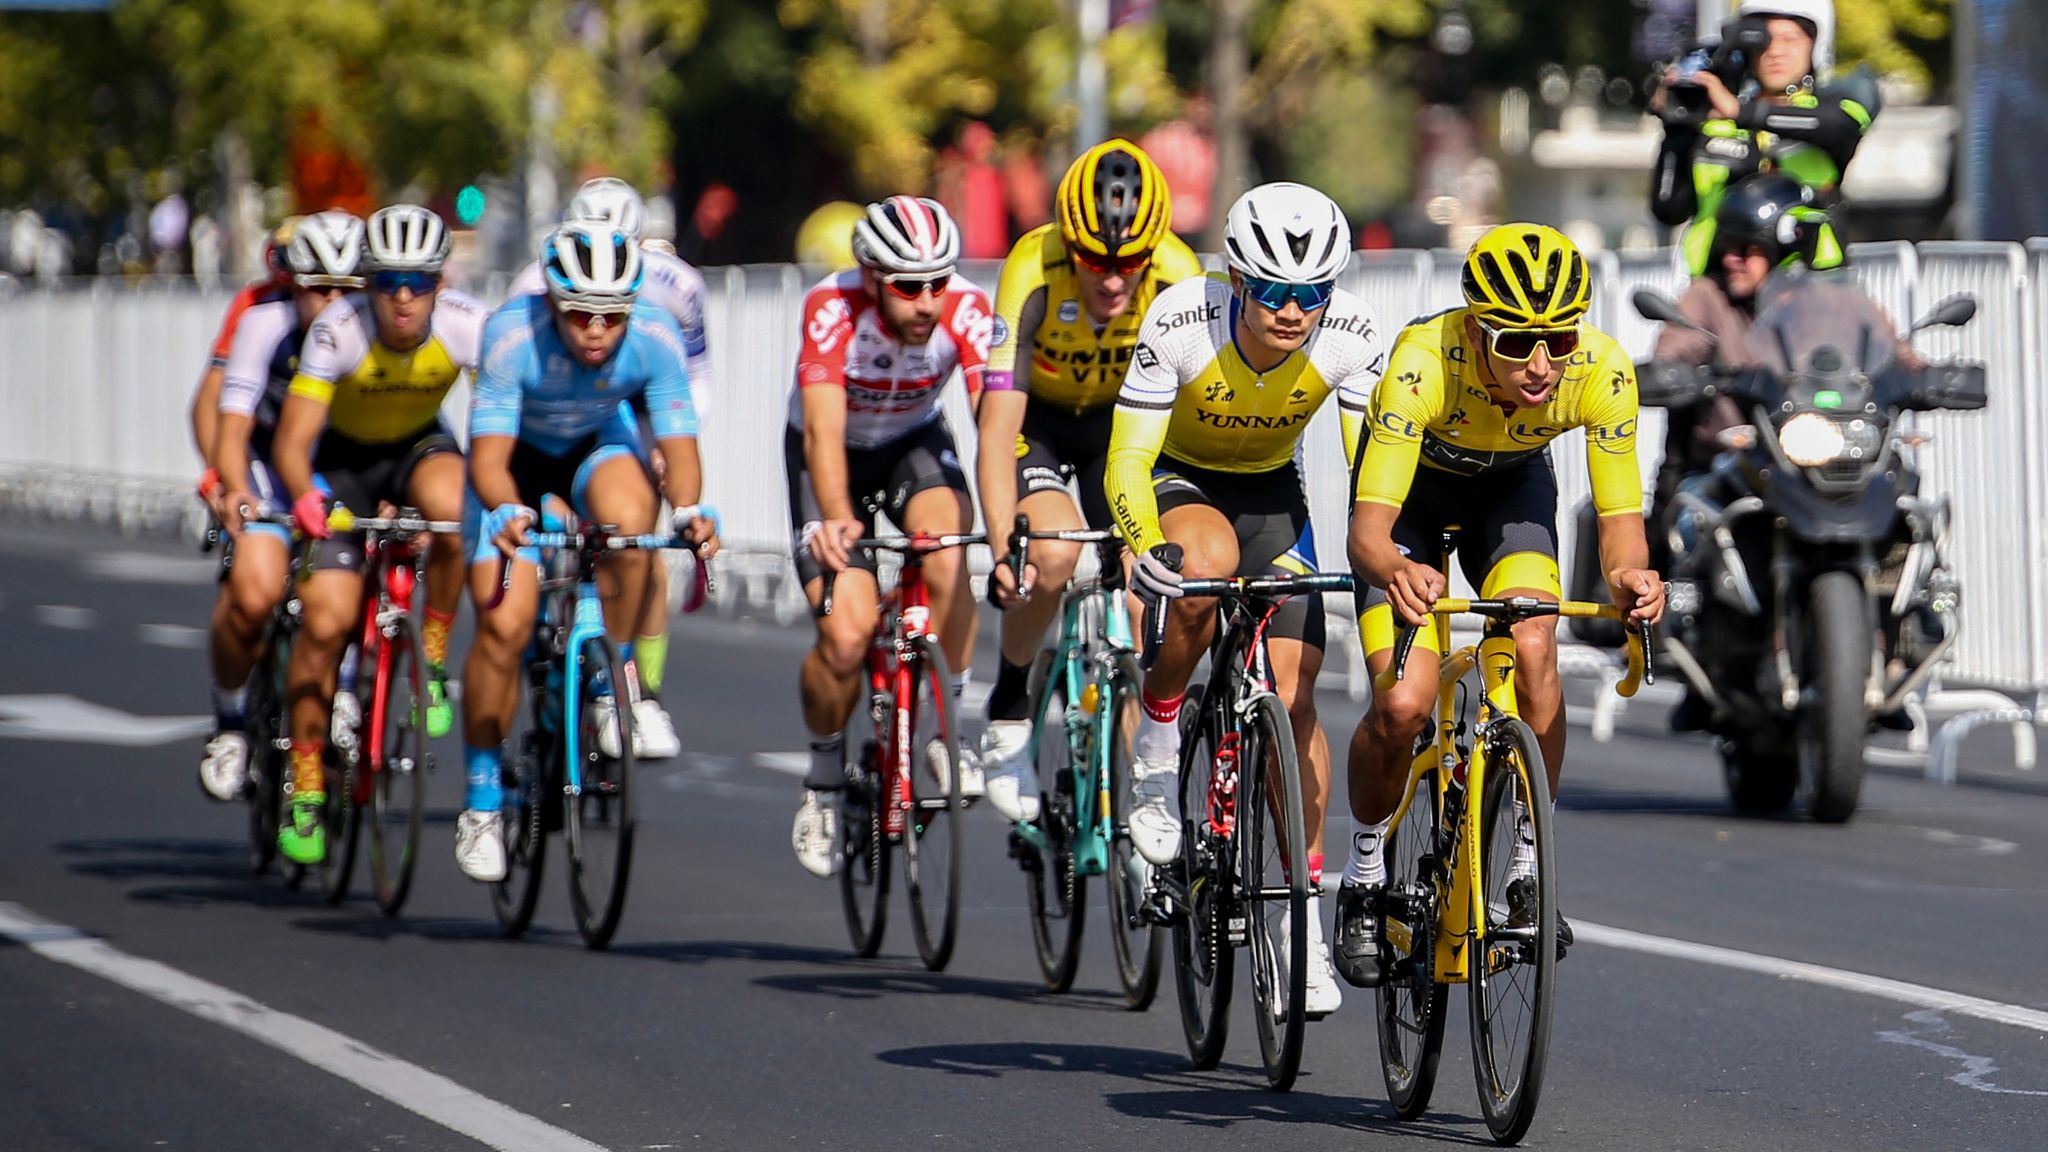 fyrværkeri film ledningsfri Tour de France 2021 to begin in Brittany after Denmark postponement |  Cycling News | Sky Sports